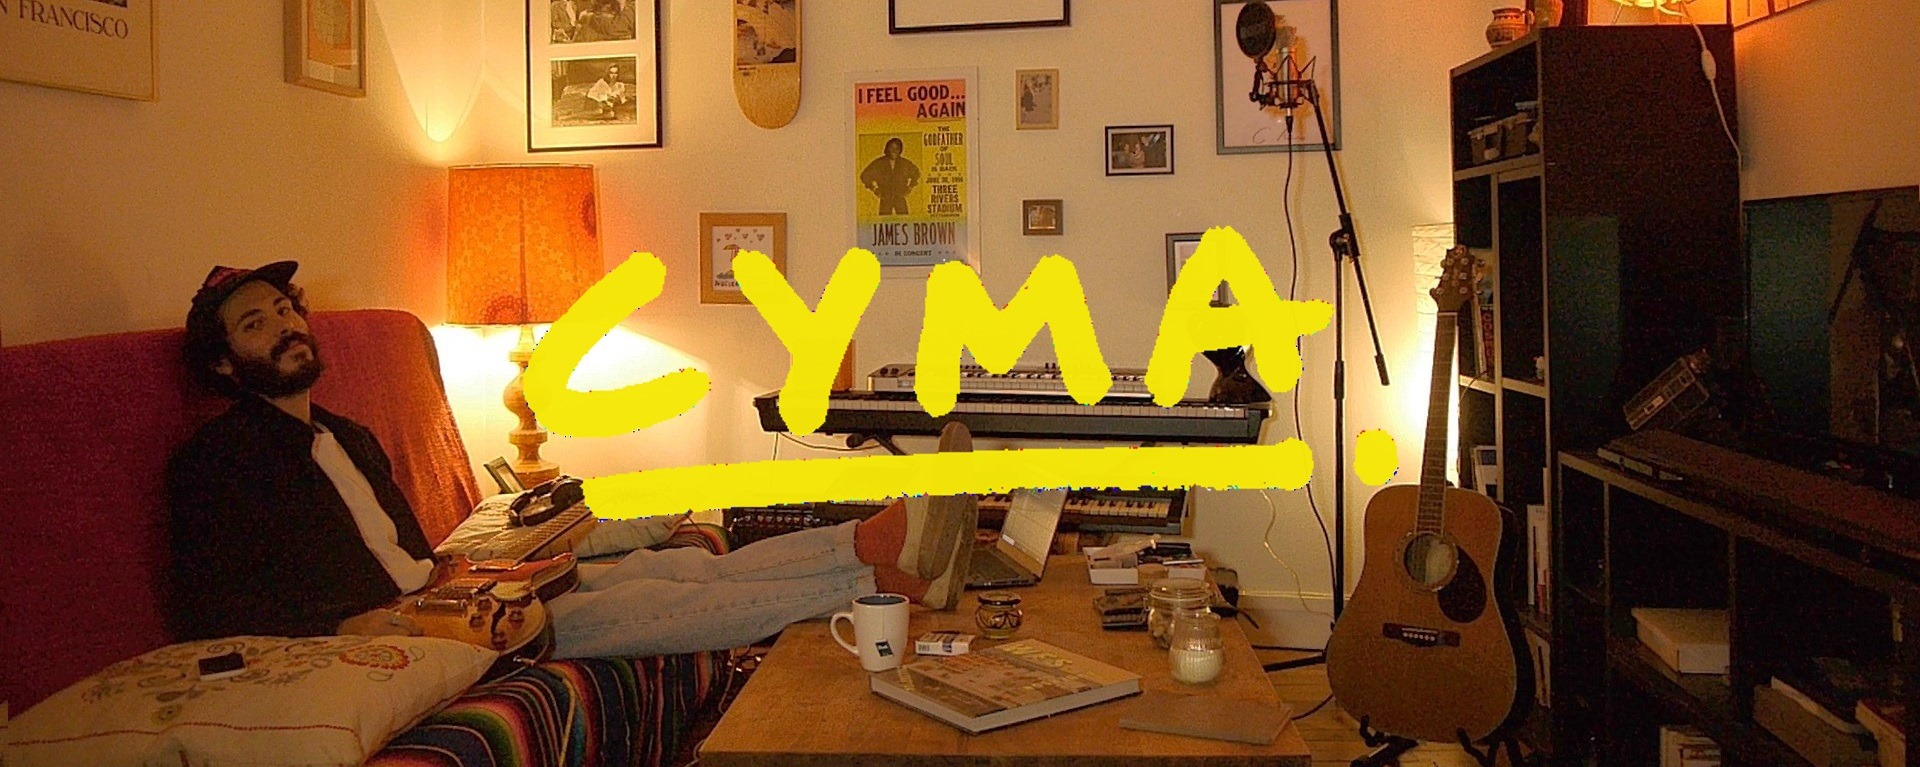 You are currently viewing Cyma, le nouveau talent très « french touch » de la scène musicale française.